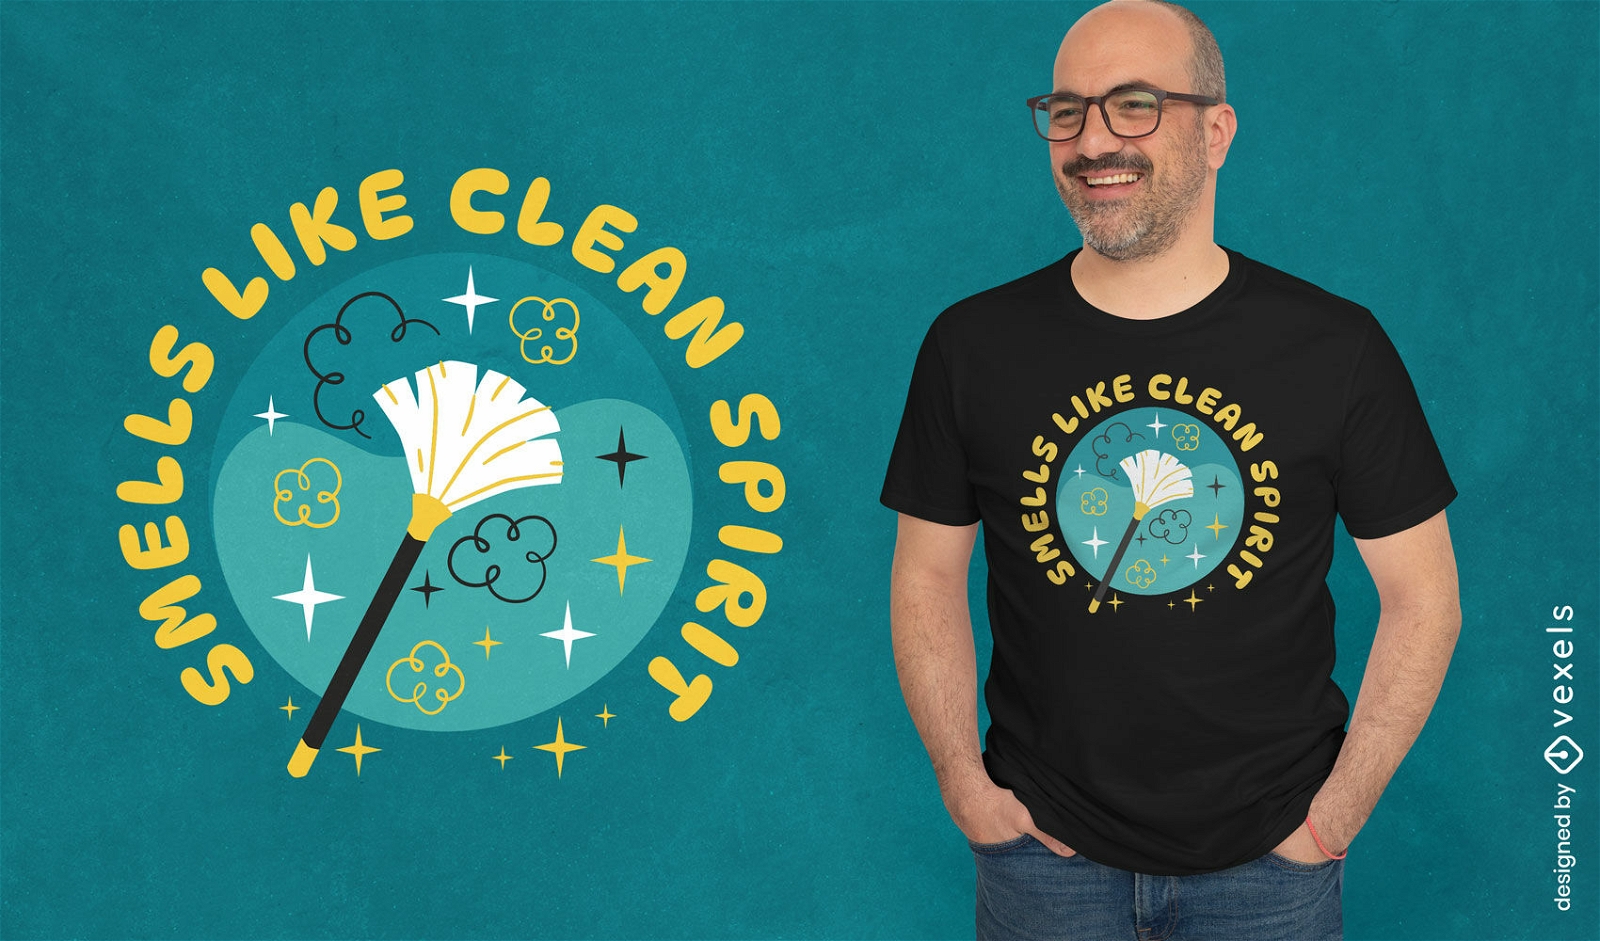 Von der Reinigung inspiriertes T-Shirt-Design